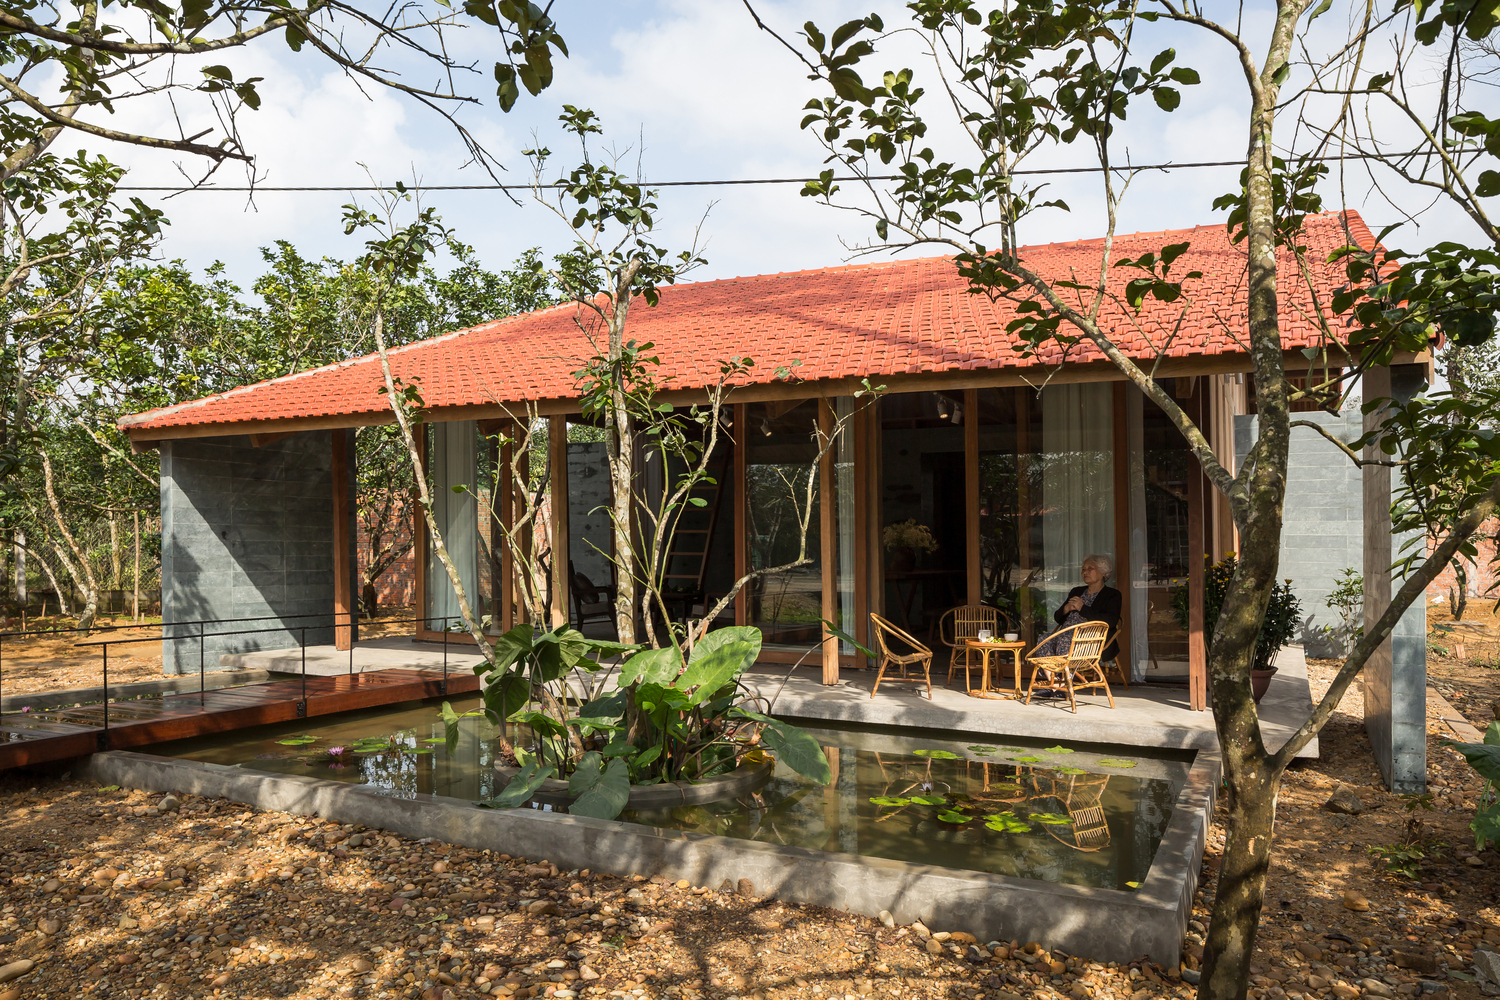 hình ảnh toàn cảnh ngôi nhà gỗ ở Huế với mái ngói đỏ, hồ sen nhỏ, bà cụ ngồi ở hiên nhà